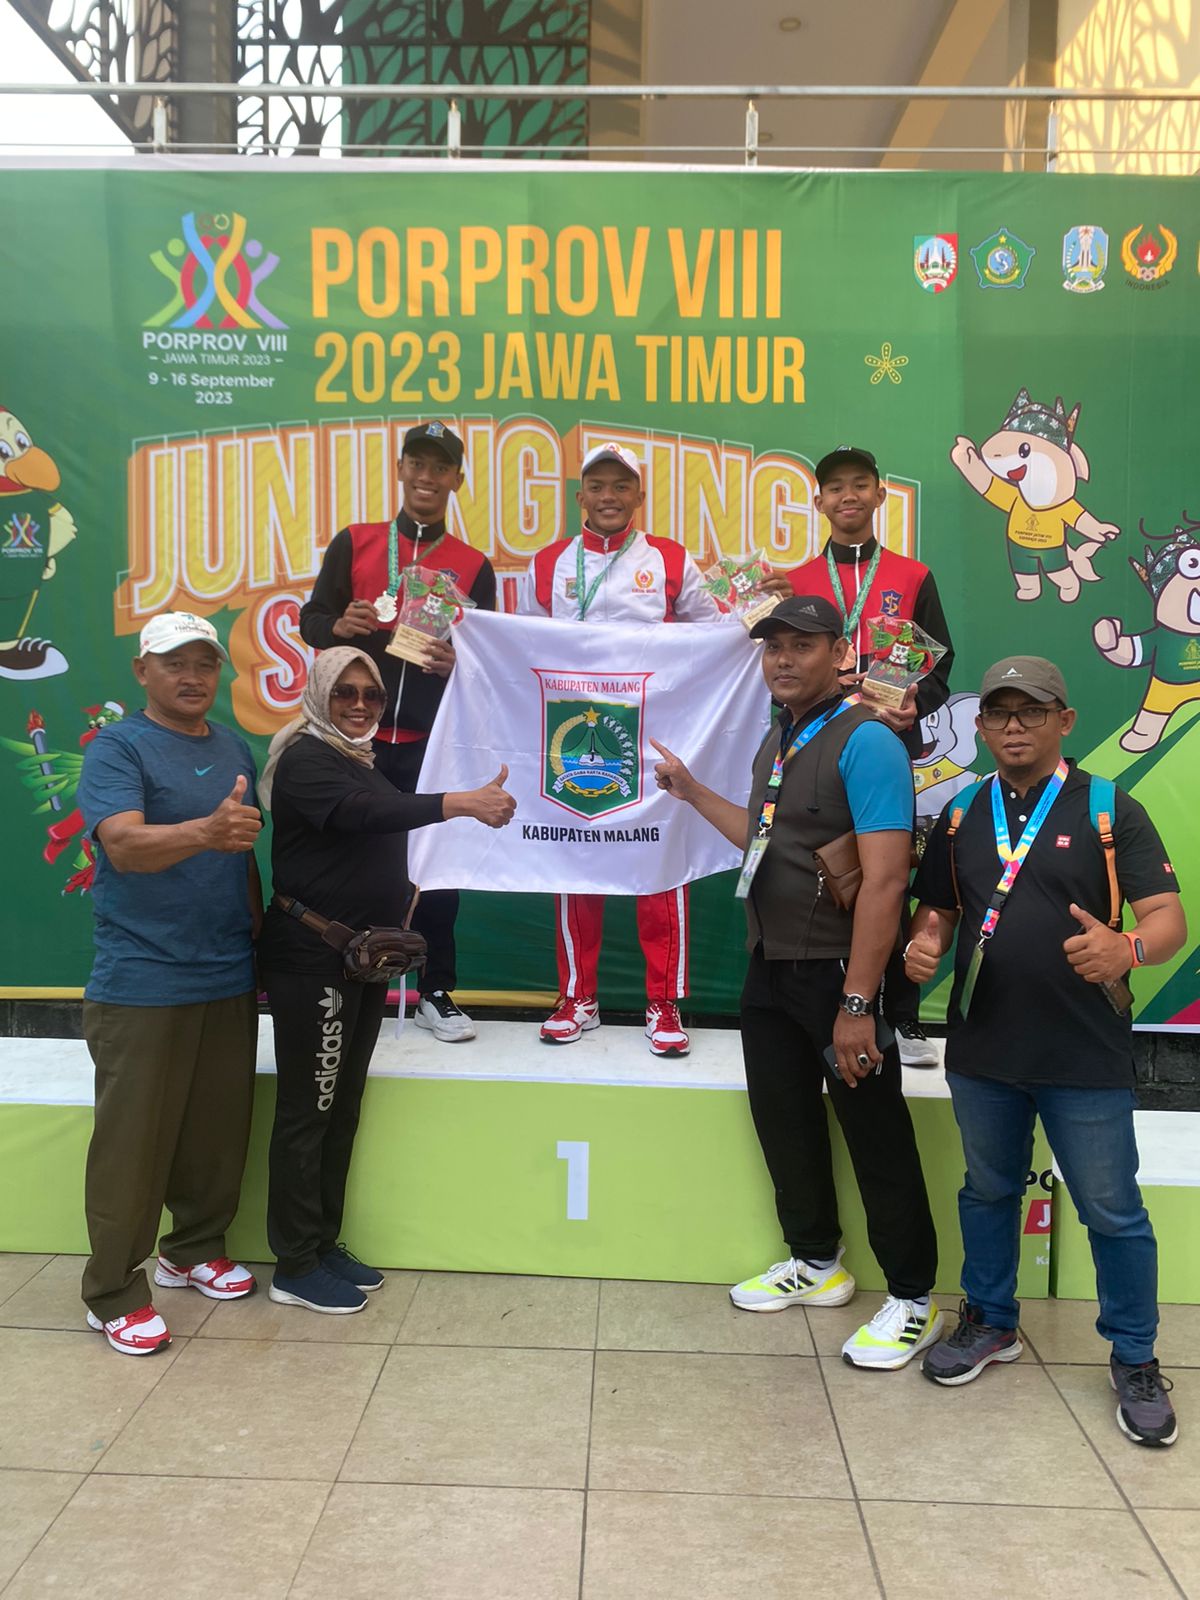 Update Perolehan Medali Kota Malang dan Kabupaten Malang di Porprov Jatim 2023